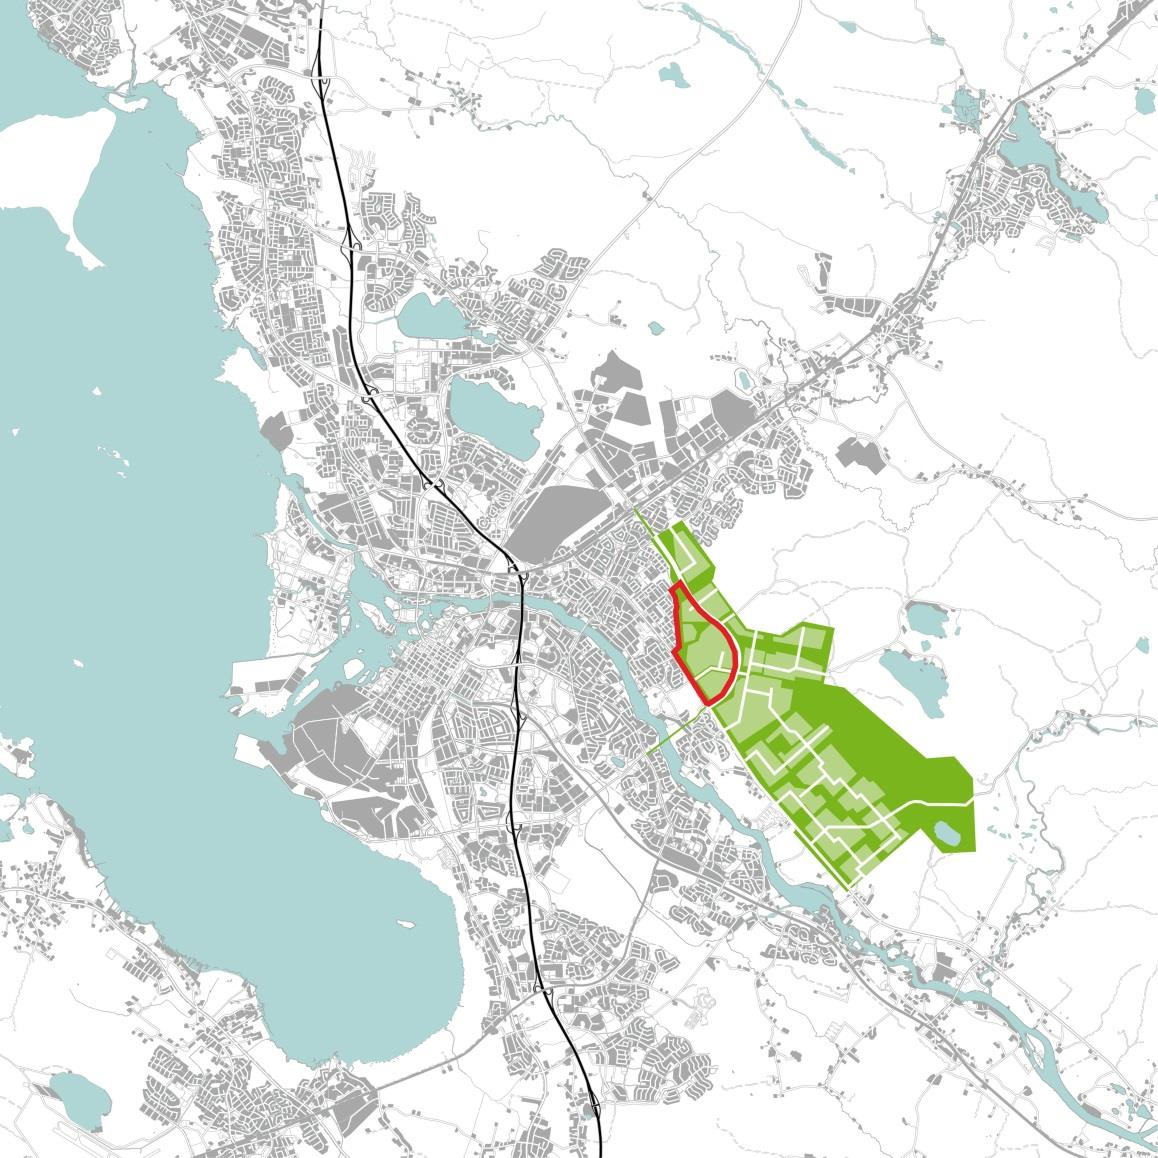 Hiukkavaara - Pohjois-Suomen suurin uusi kaupunginosa Entinen puolustusvoimien alue. Maa-alue siirtyi Oulun kaupungille vuonna 1999.